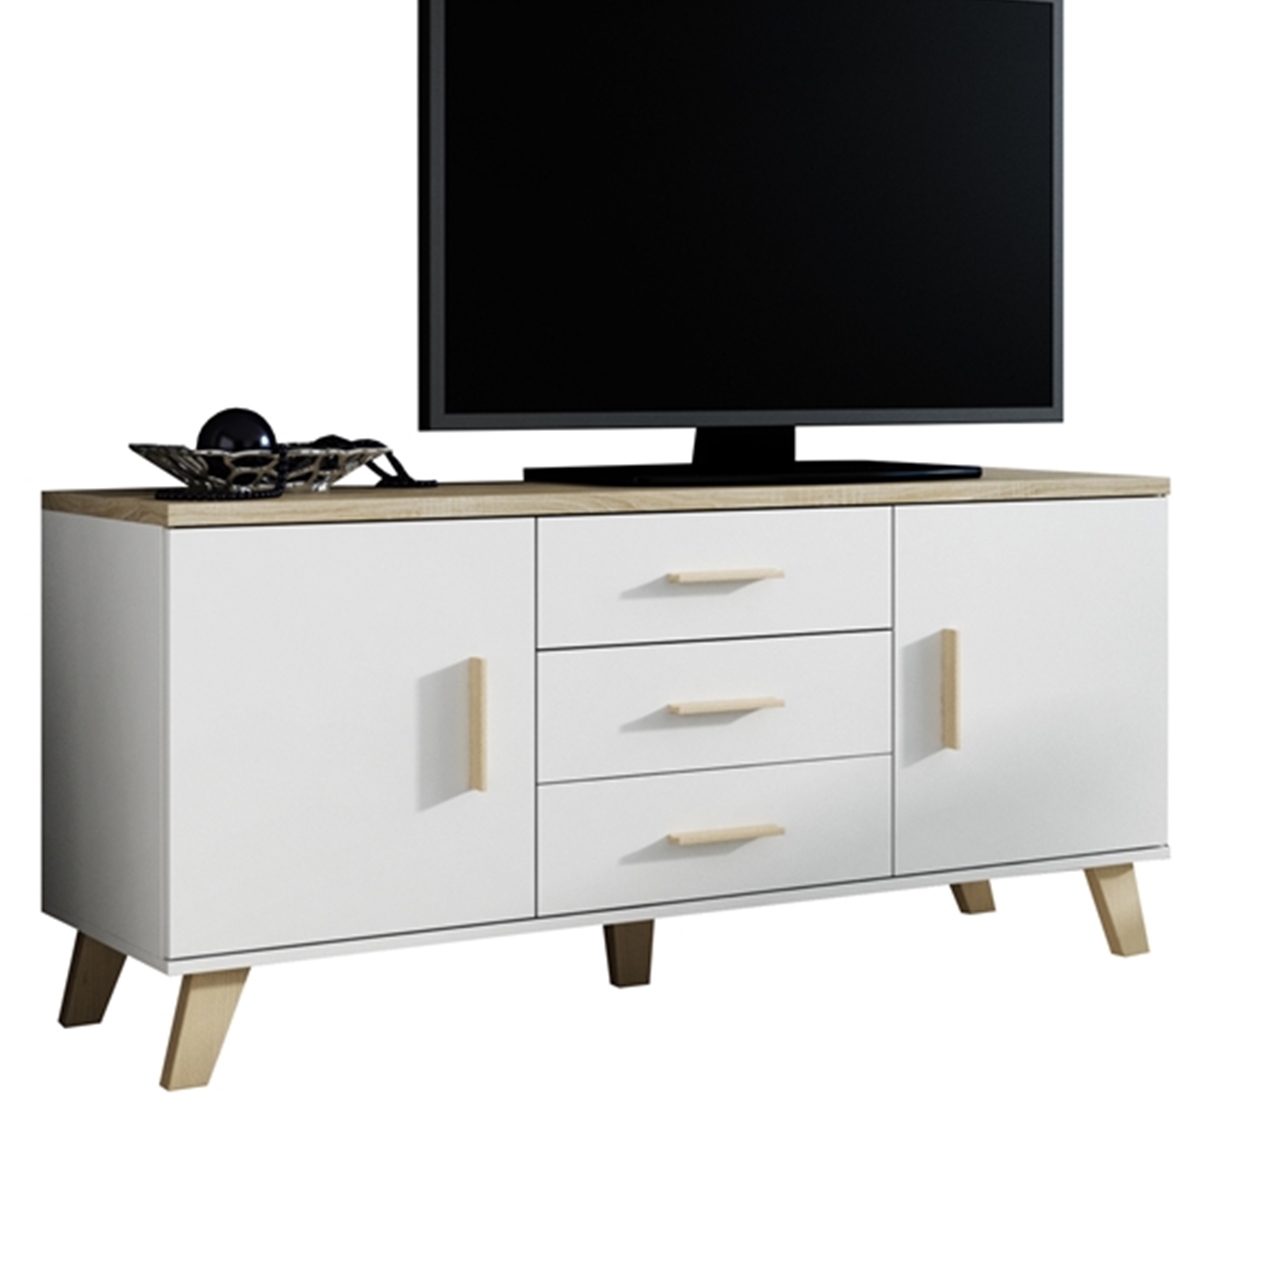 TV Stand LOTTA 150 2D3S brilliant white / sonoma oak